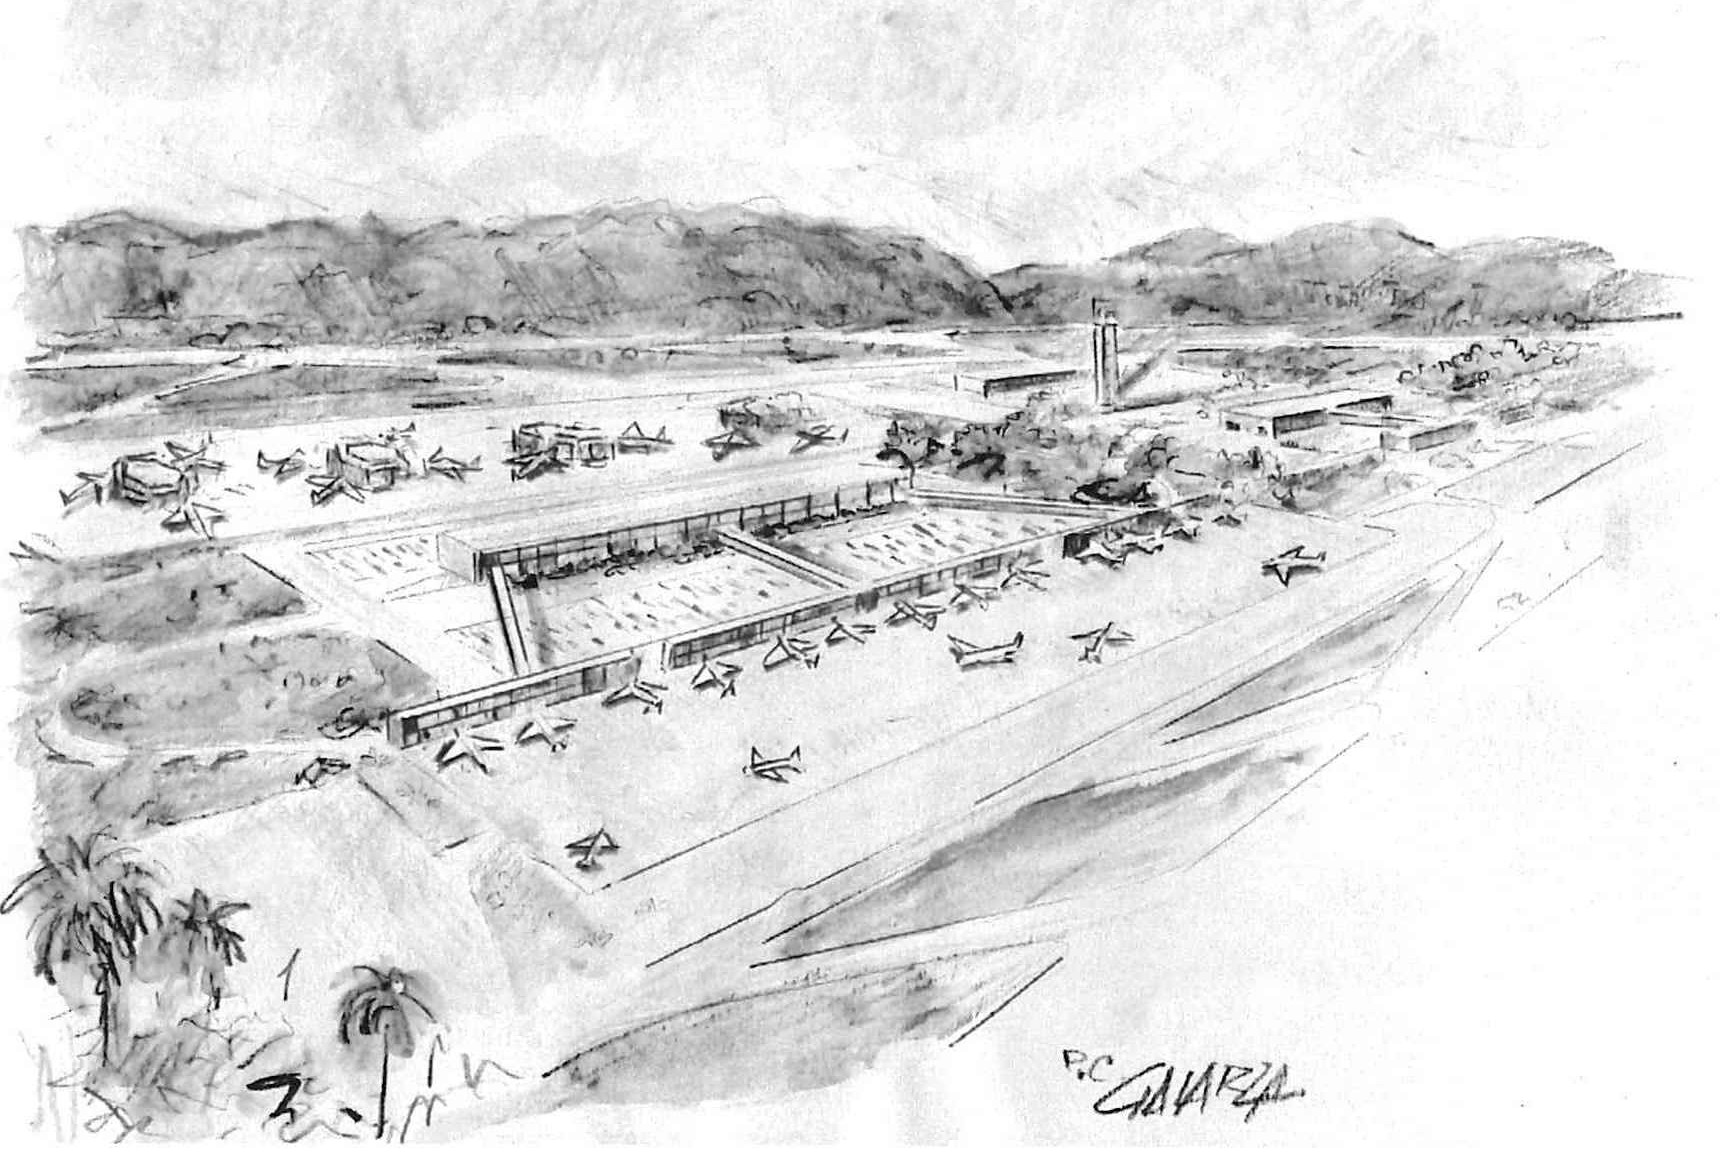 Proyecto de terminal no ejecutado del aereopuerto del Sur de Tenerife y que fue ideado por César Manrique. La imagen es un dibujo elaborado por Juan Galarza Cabrera